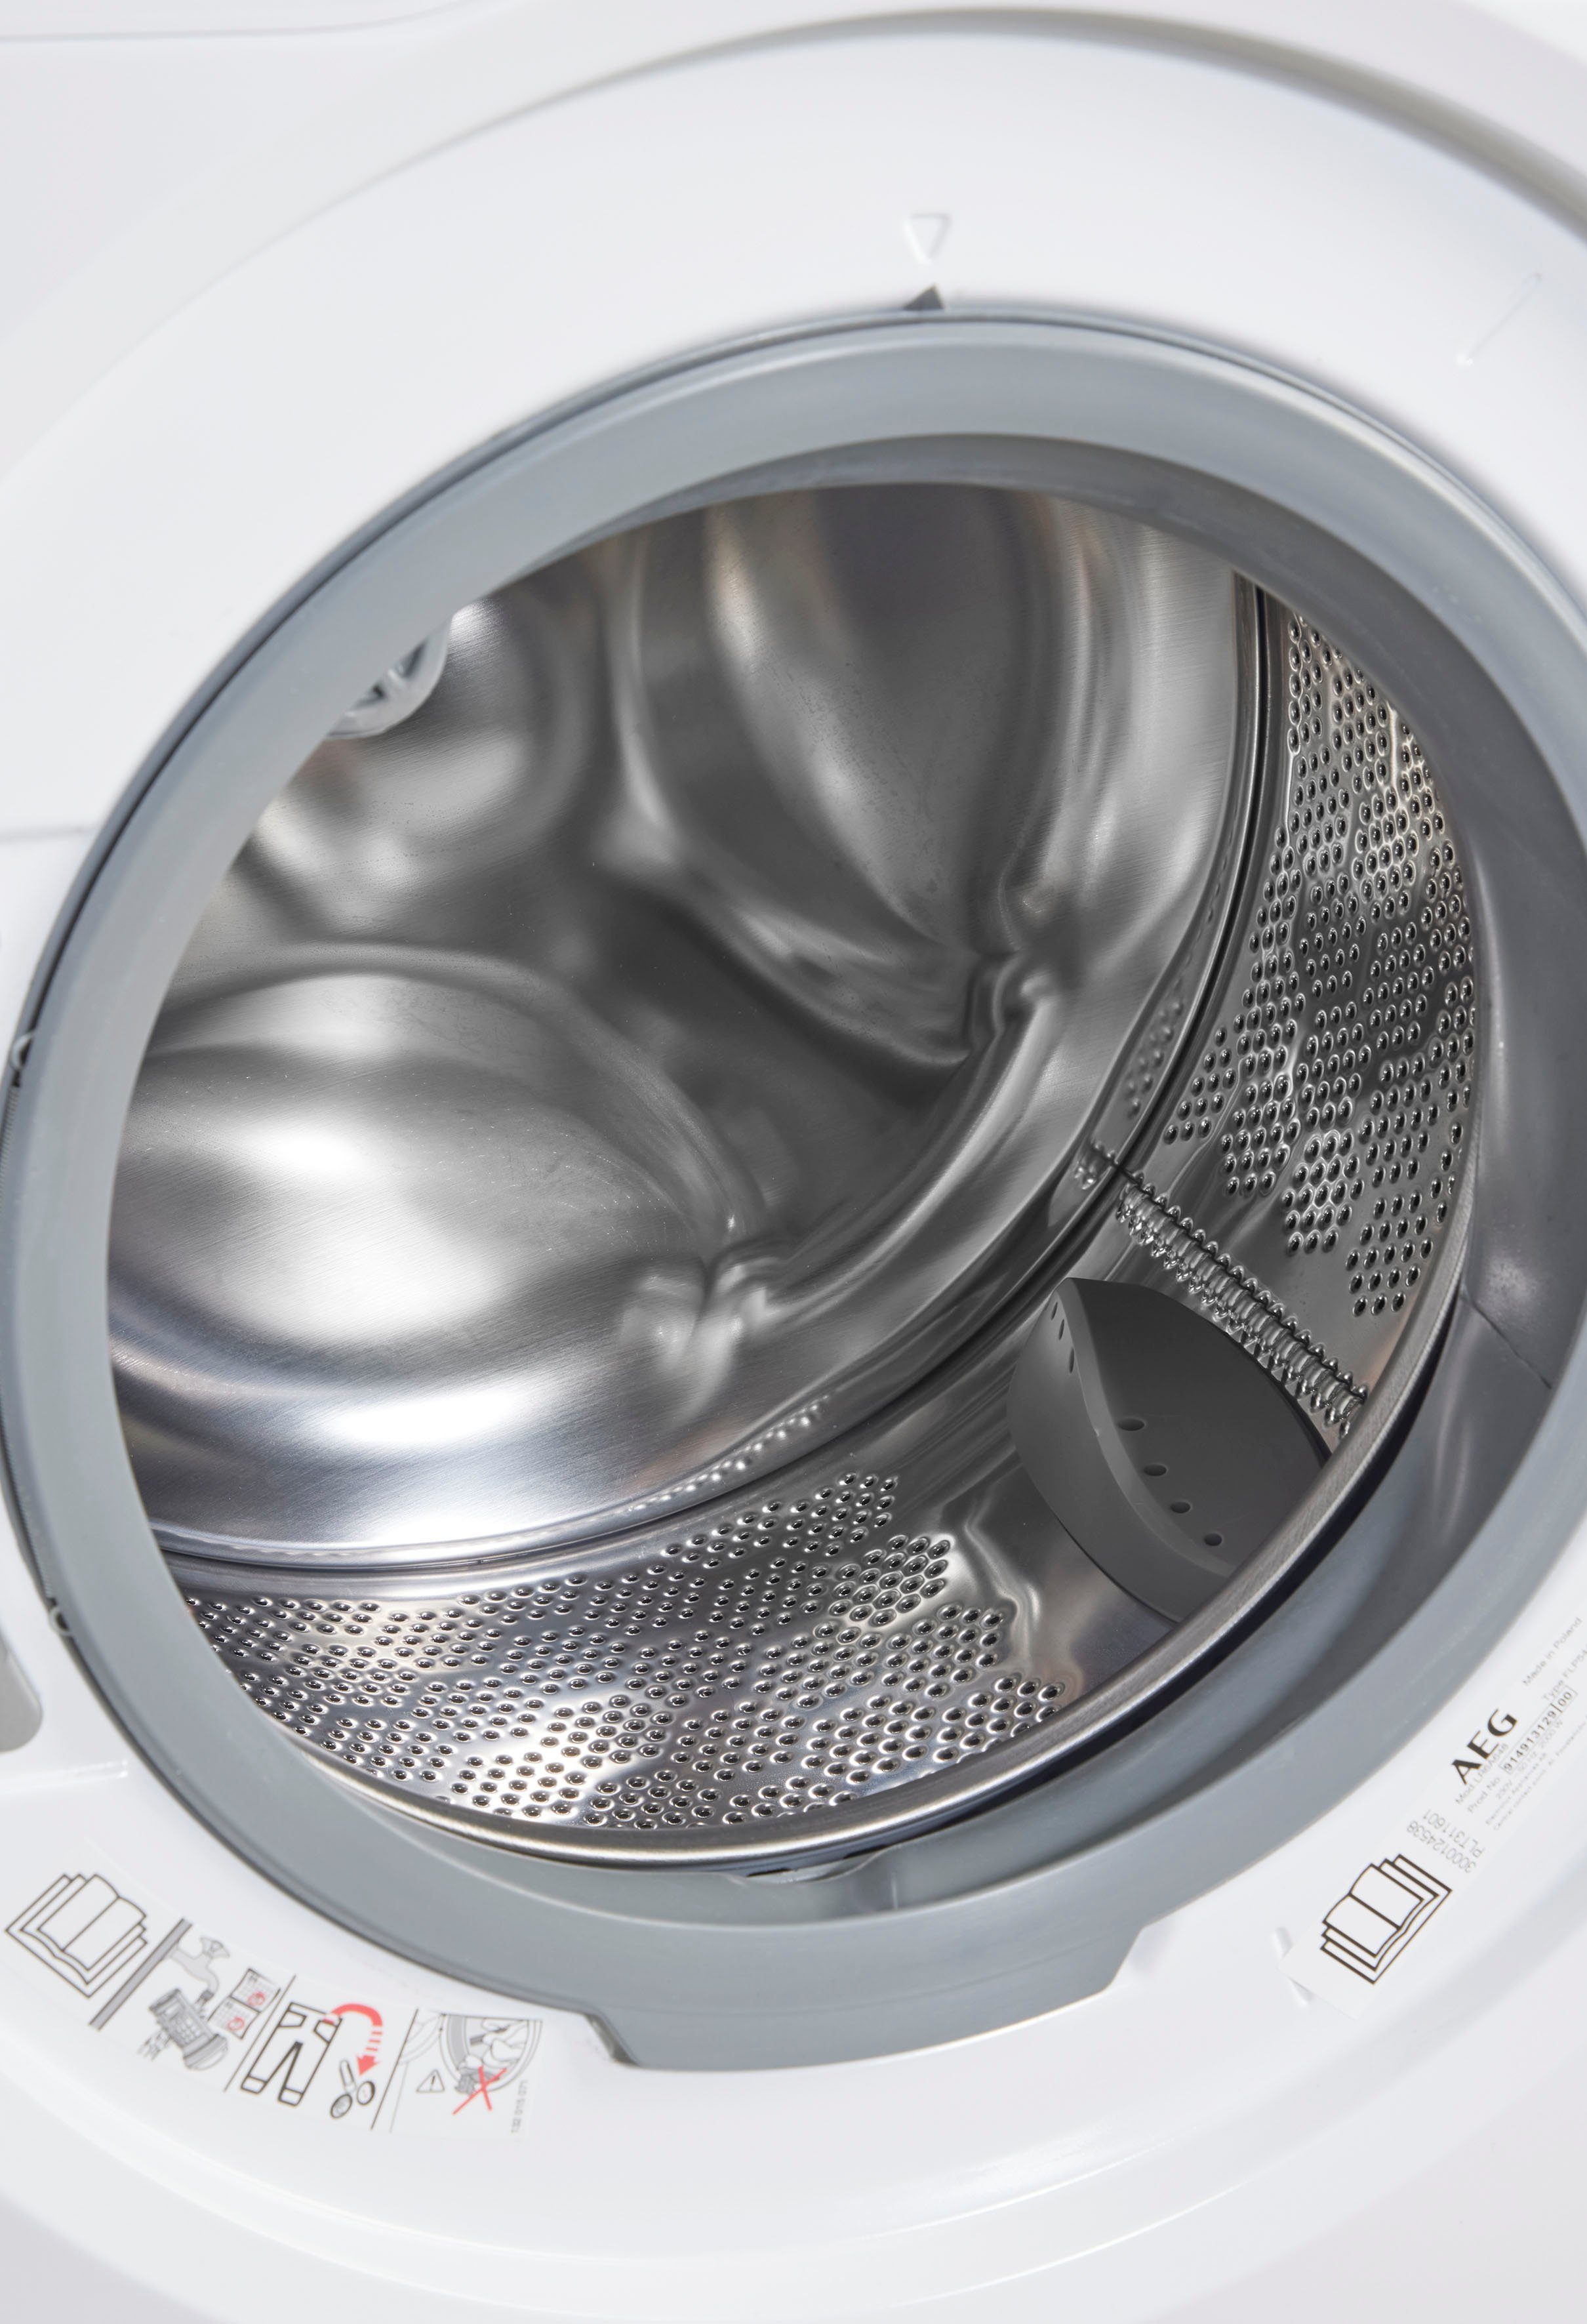 AEG Waschmaschine 6000 Zeit, Wasser - 40% und 1400 U/min, Energie spart 8 kg, LR6A648, bis Mengenautomatik​ ProSense®